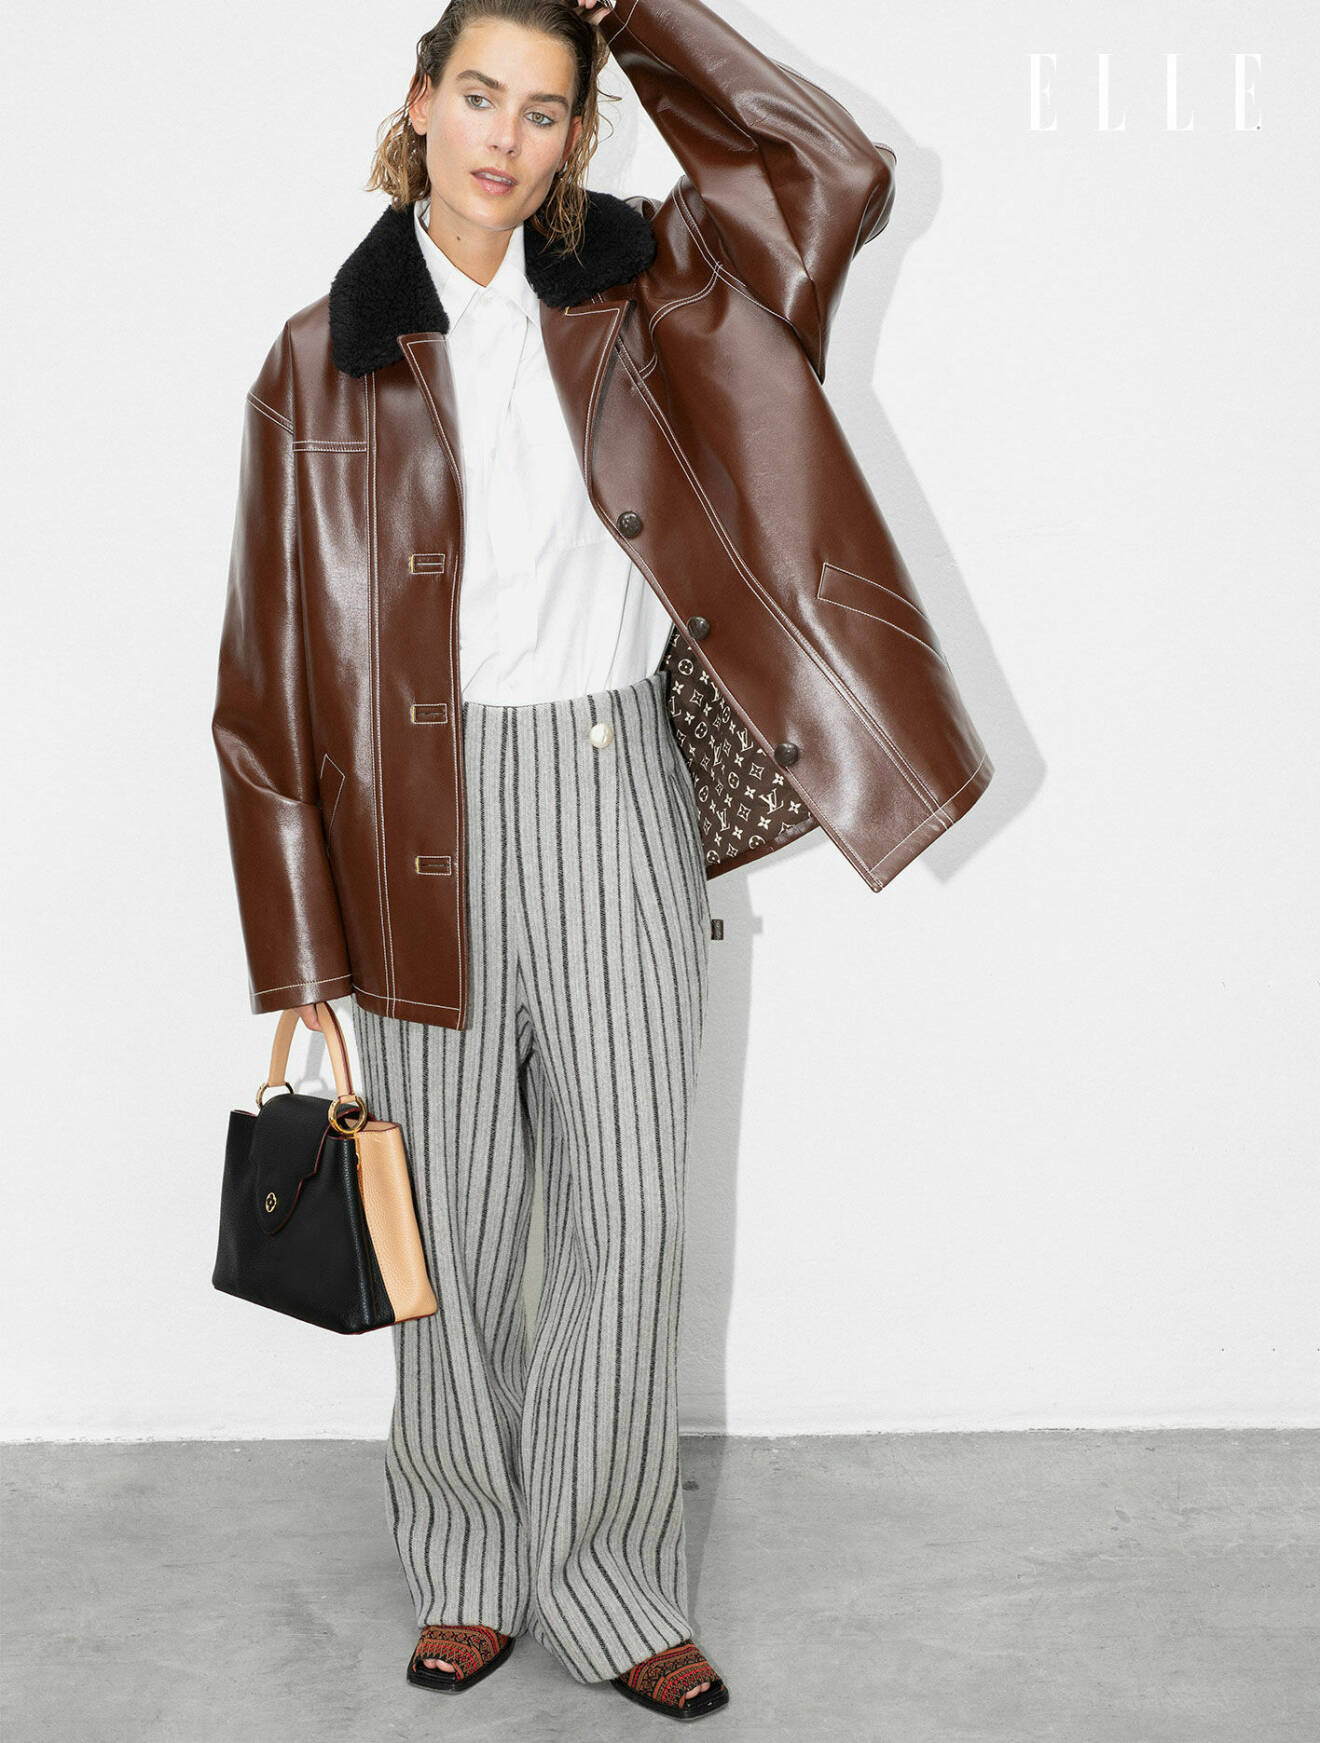 Modellen bär en brun jacka, vit skjorta och randiga byxor, allt från Louis Vuitton.